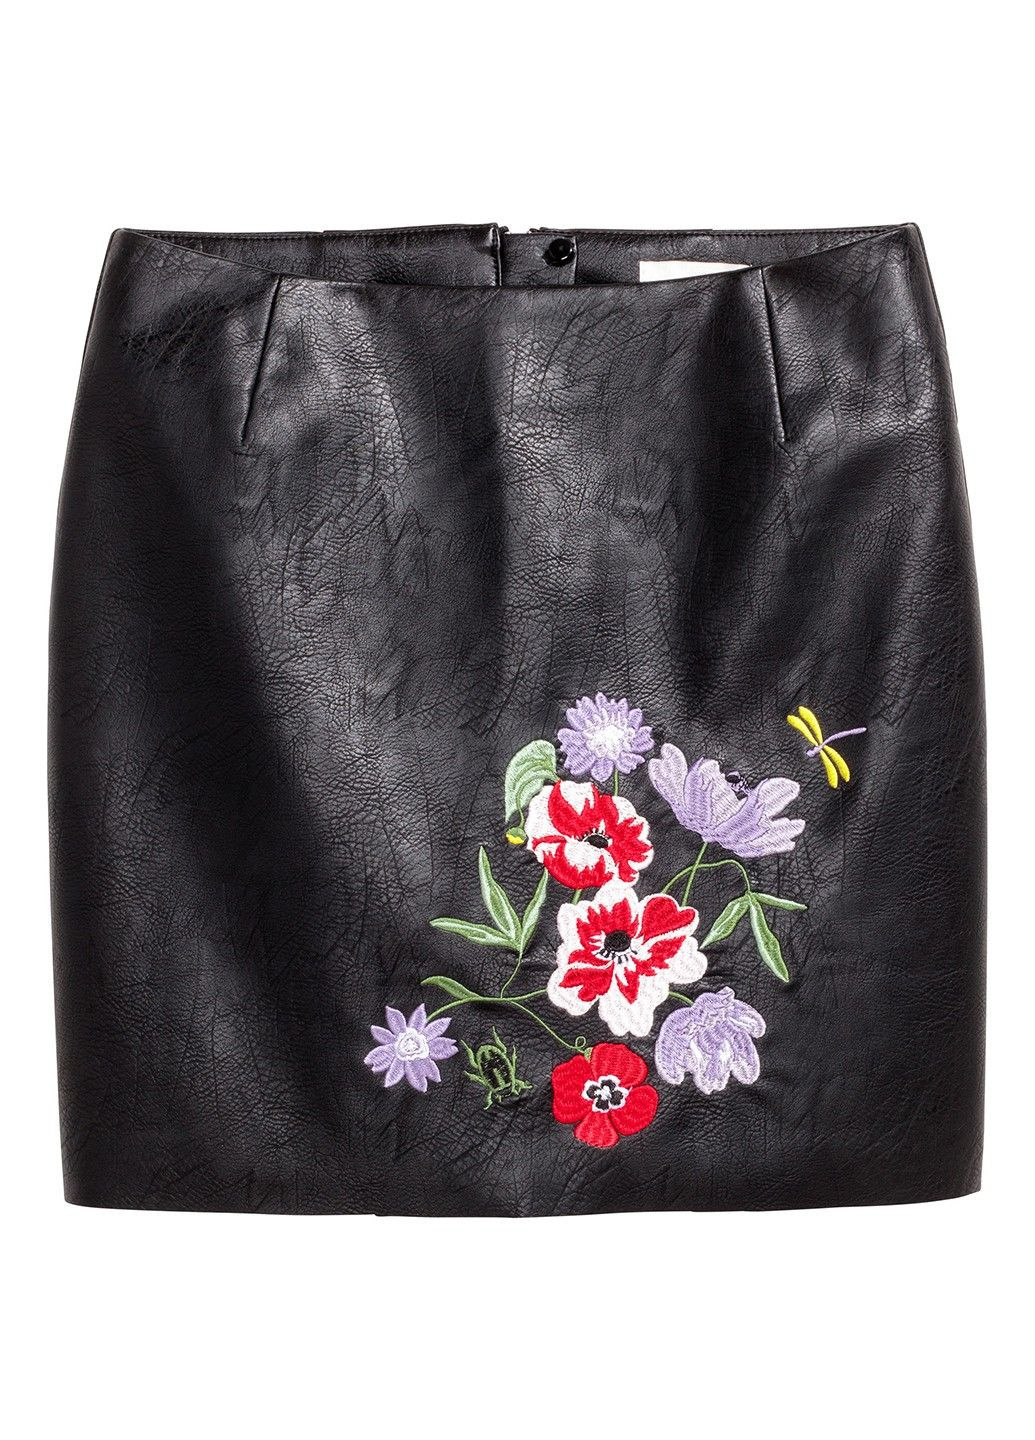 Черная цветочной расцветки юбка H&M